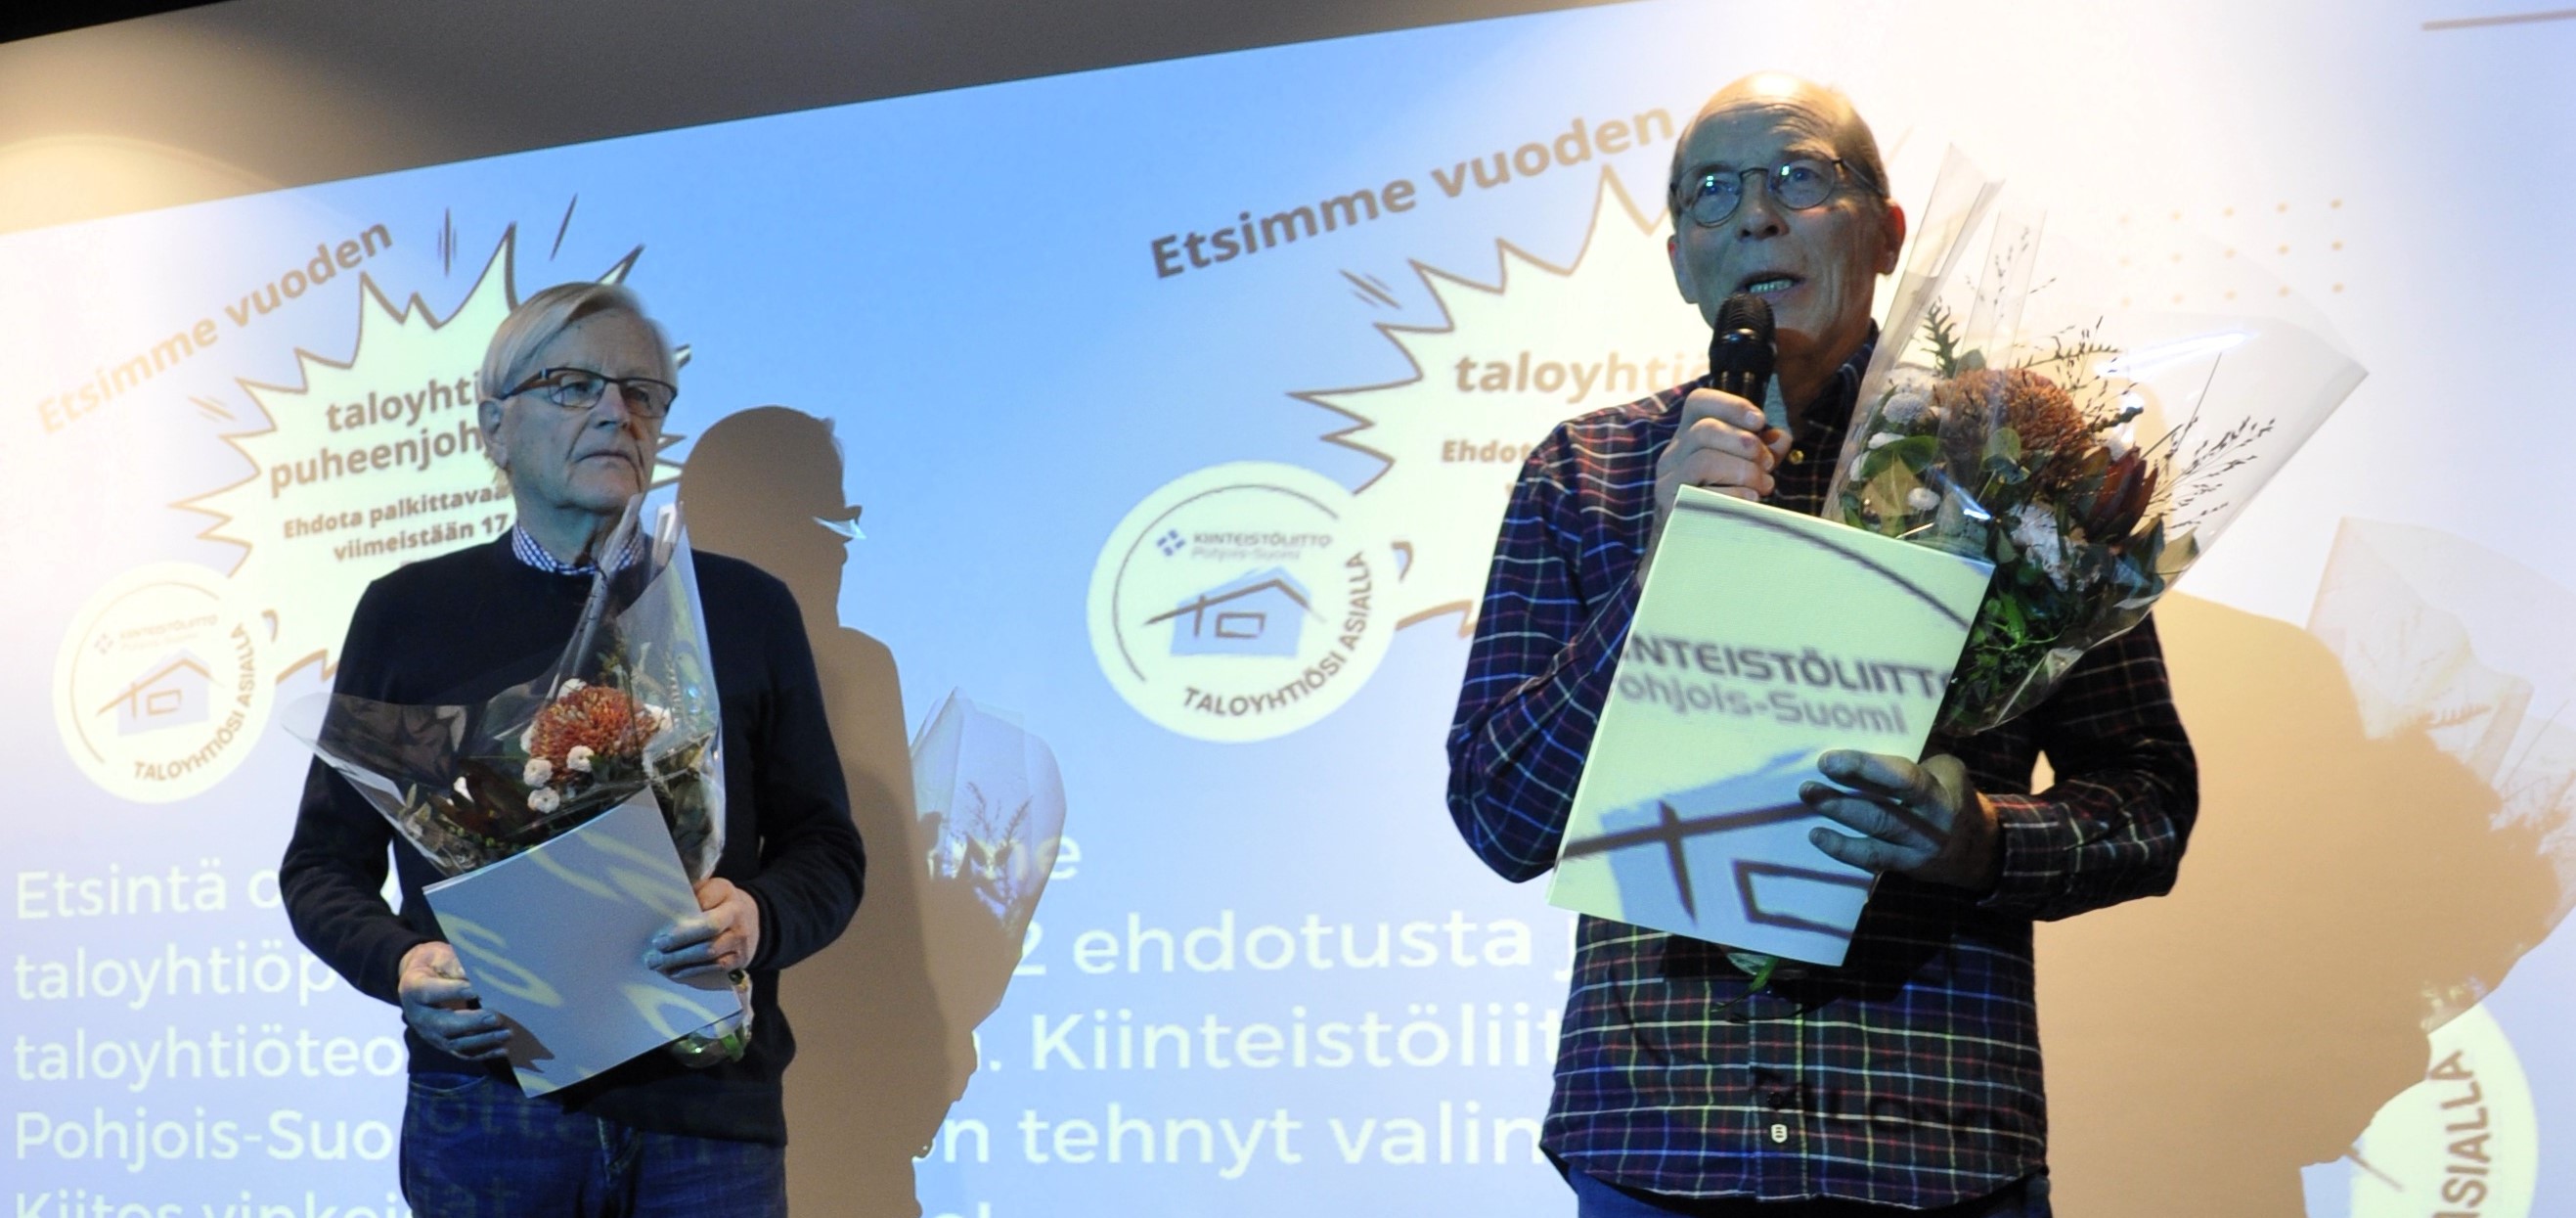 Vuoden 2023 taloyhtiöpuheenjohtajaksi valittiin Eero Marttila - taloyhtiöteosta palkittiin Esa Hämäläinen